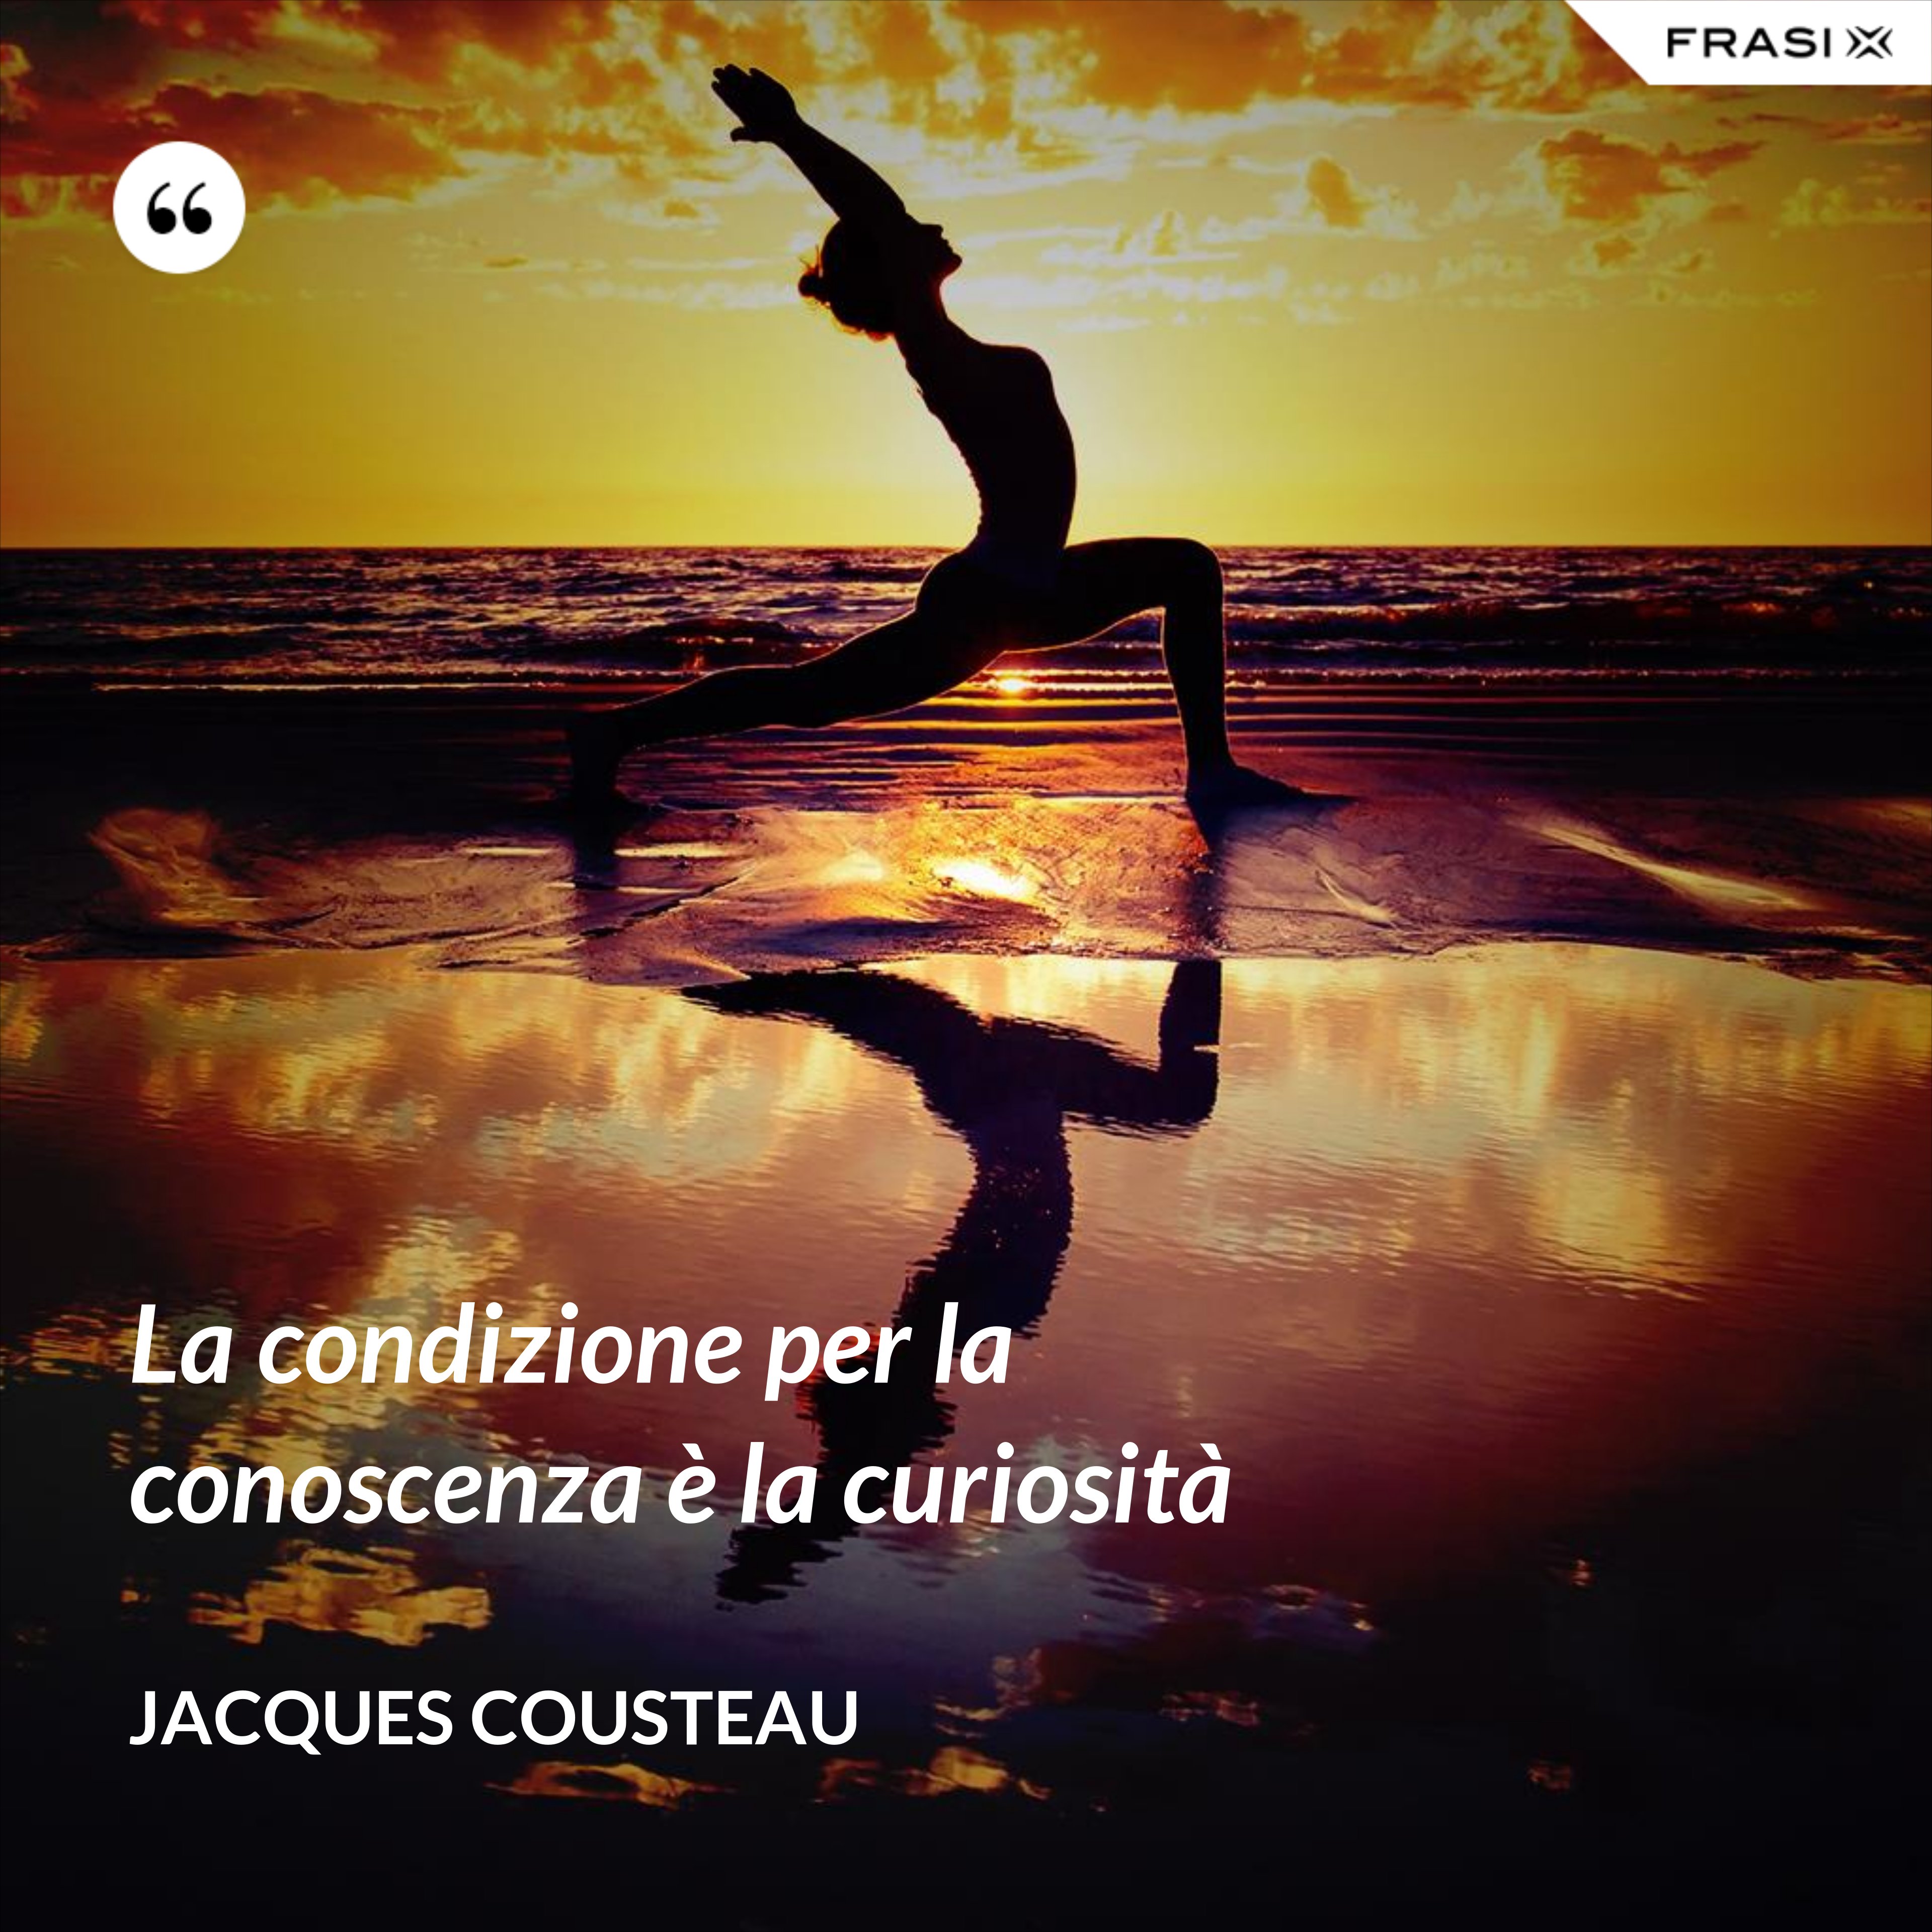 La condizione per la conoscenza è la curiosità - Jacques Cousteau